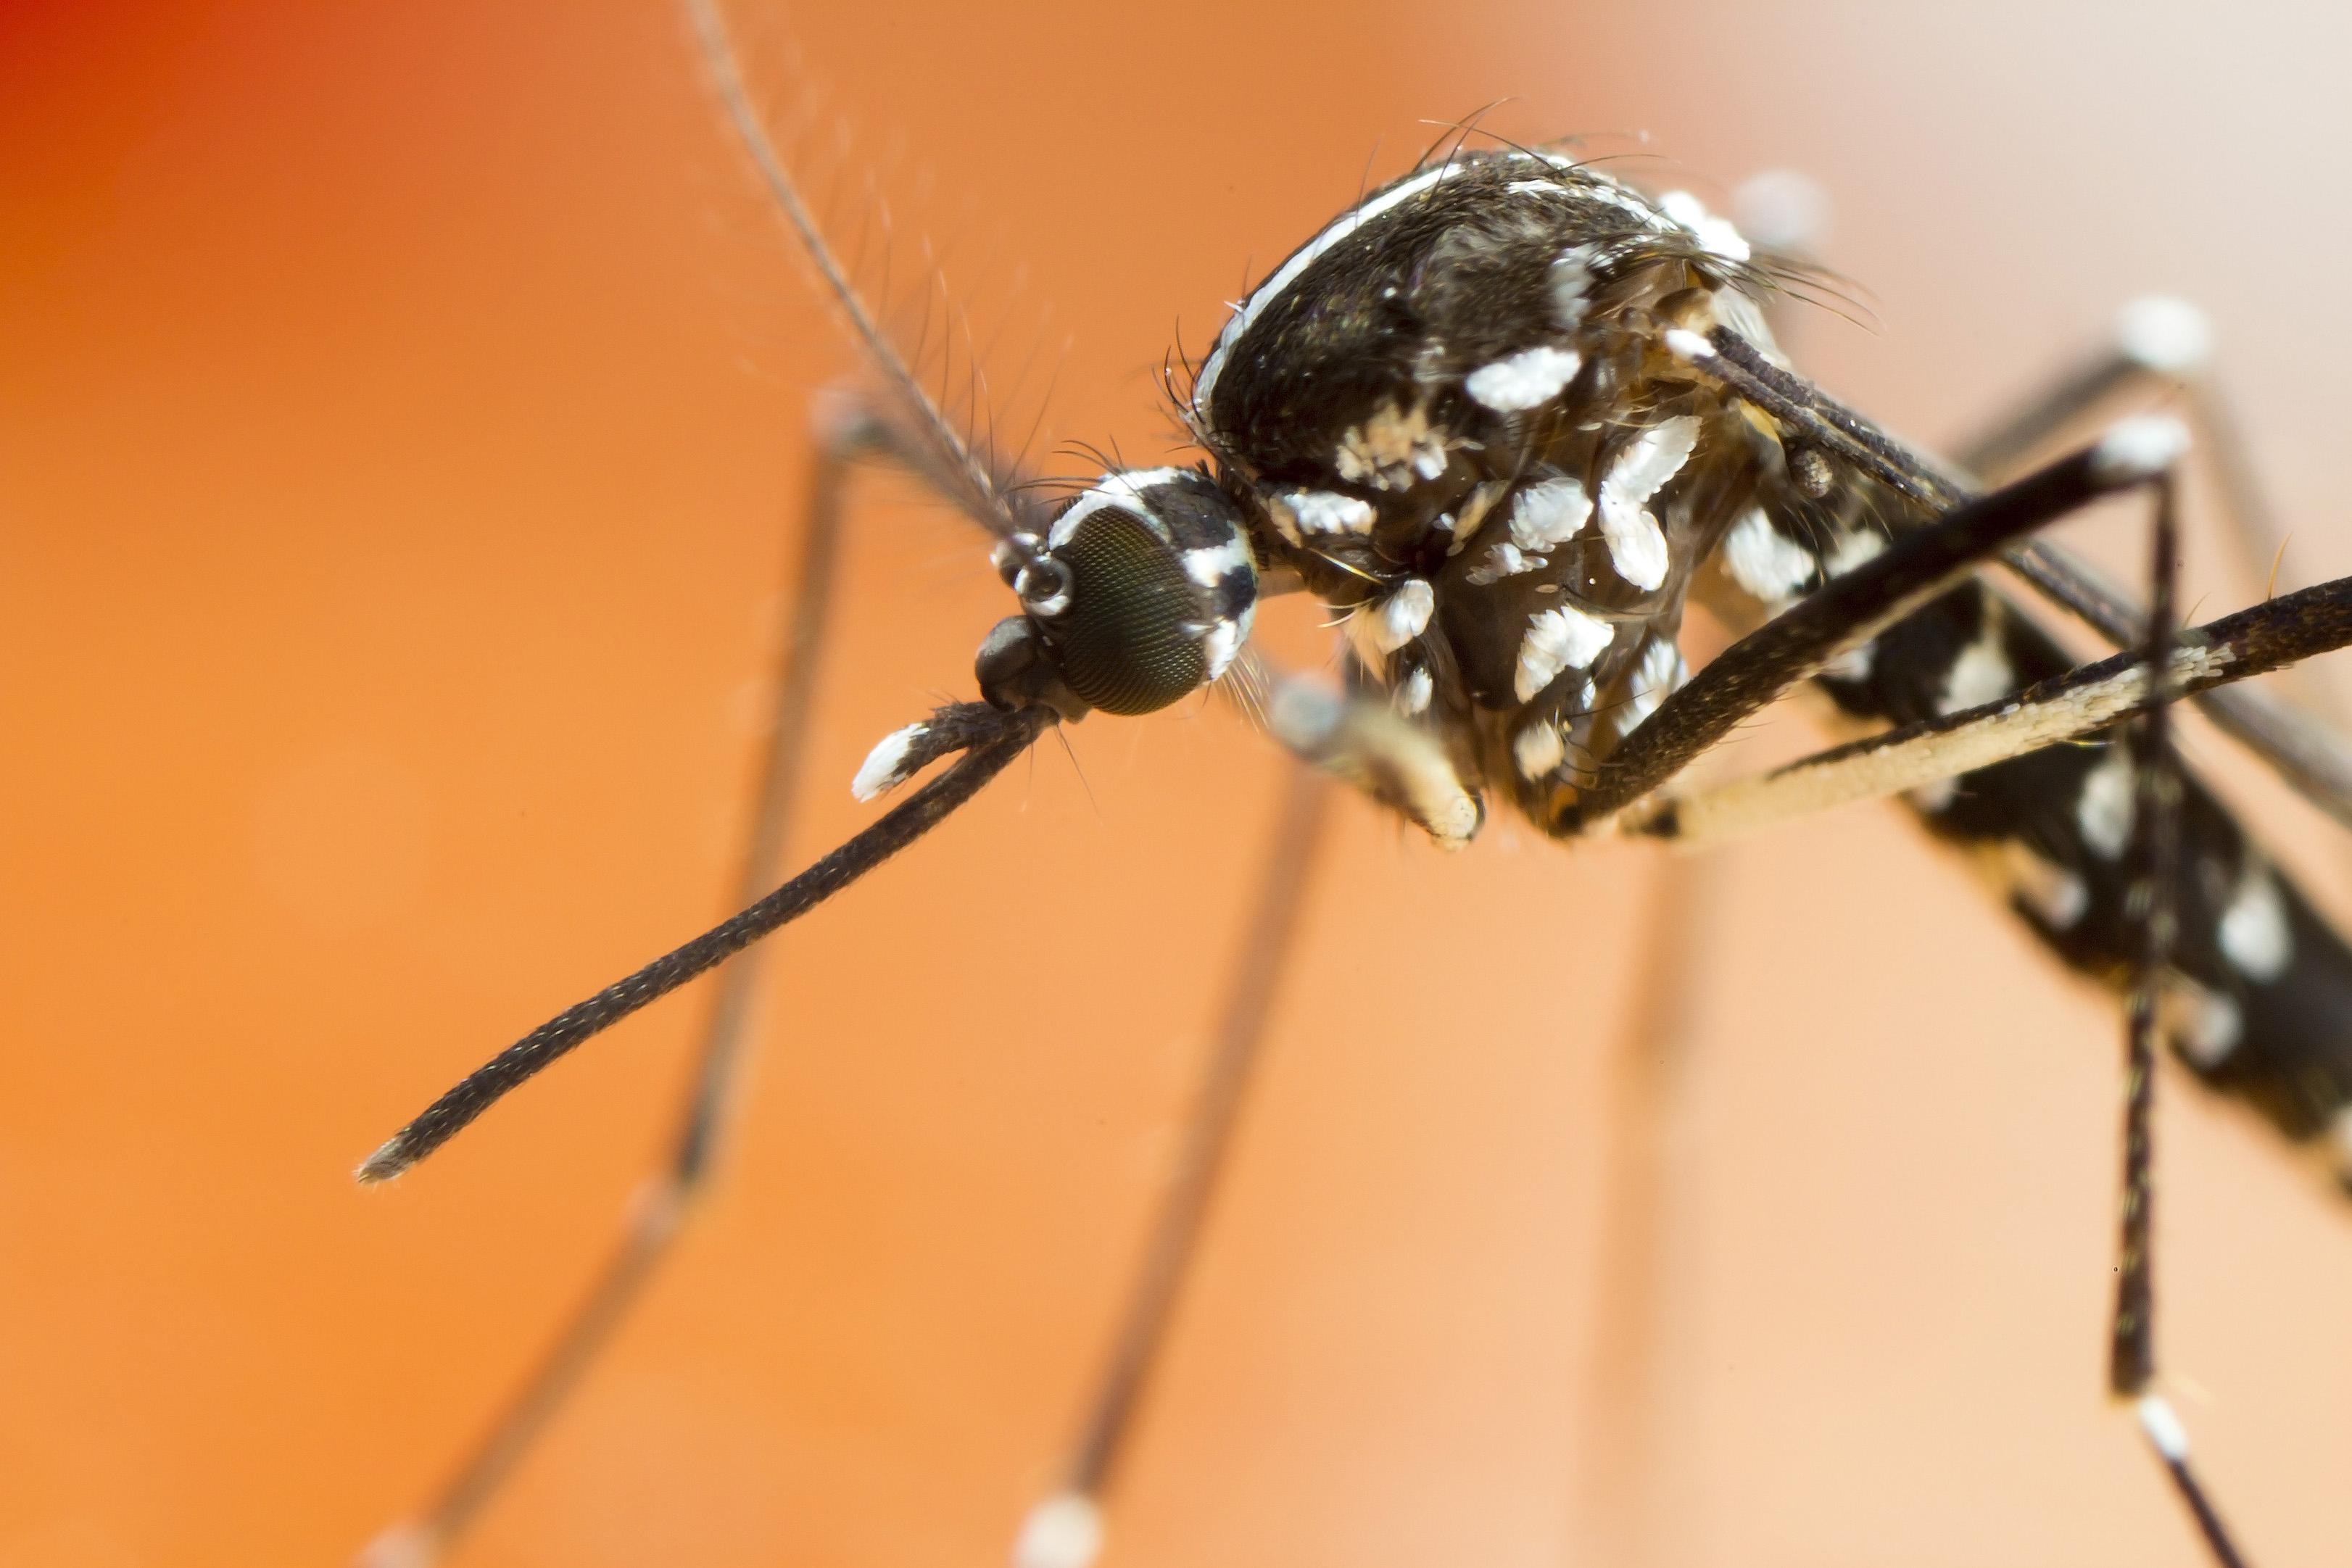 Santé publique France lance l'alerte : le moustique-tigre se répand fortement 